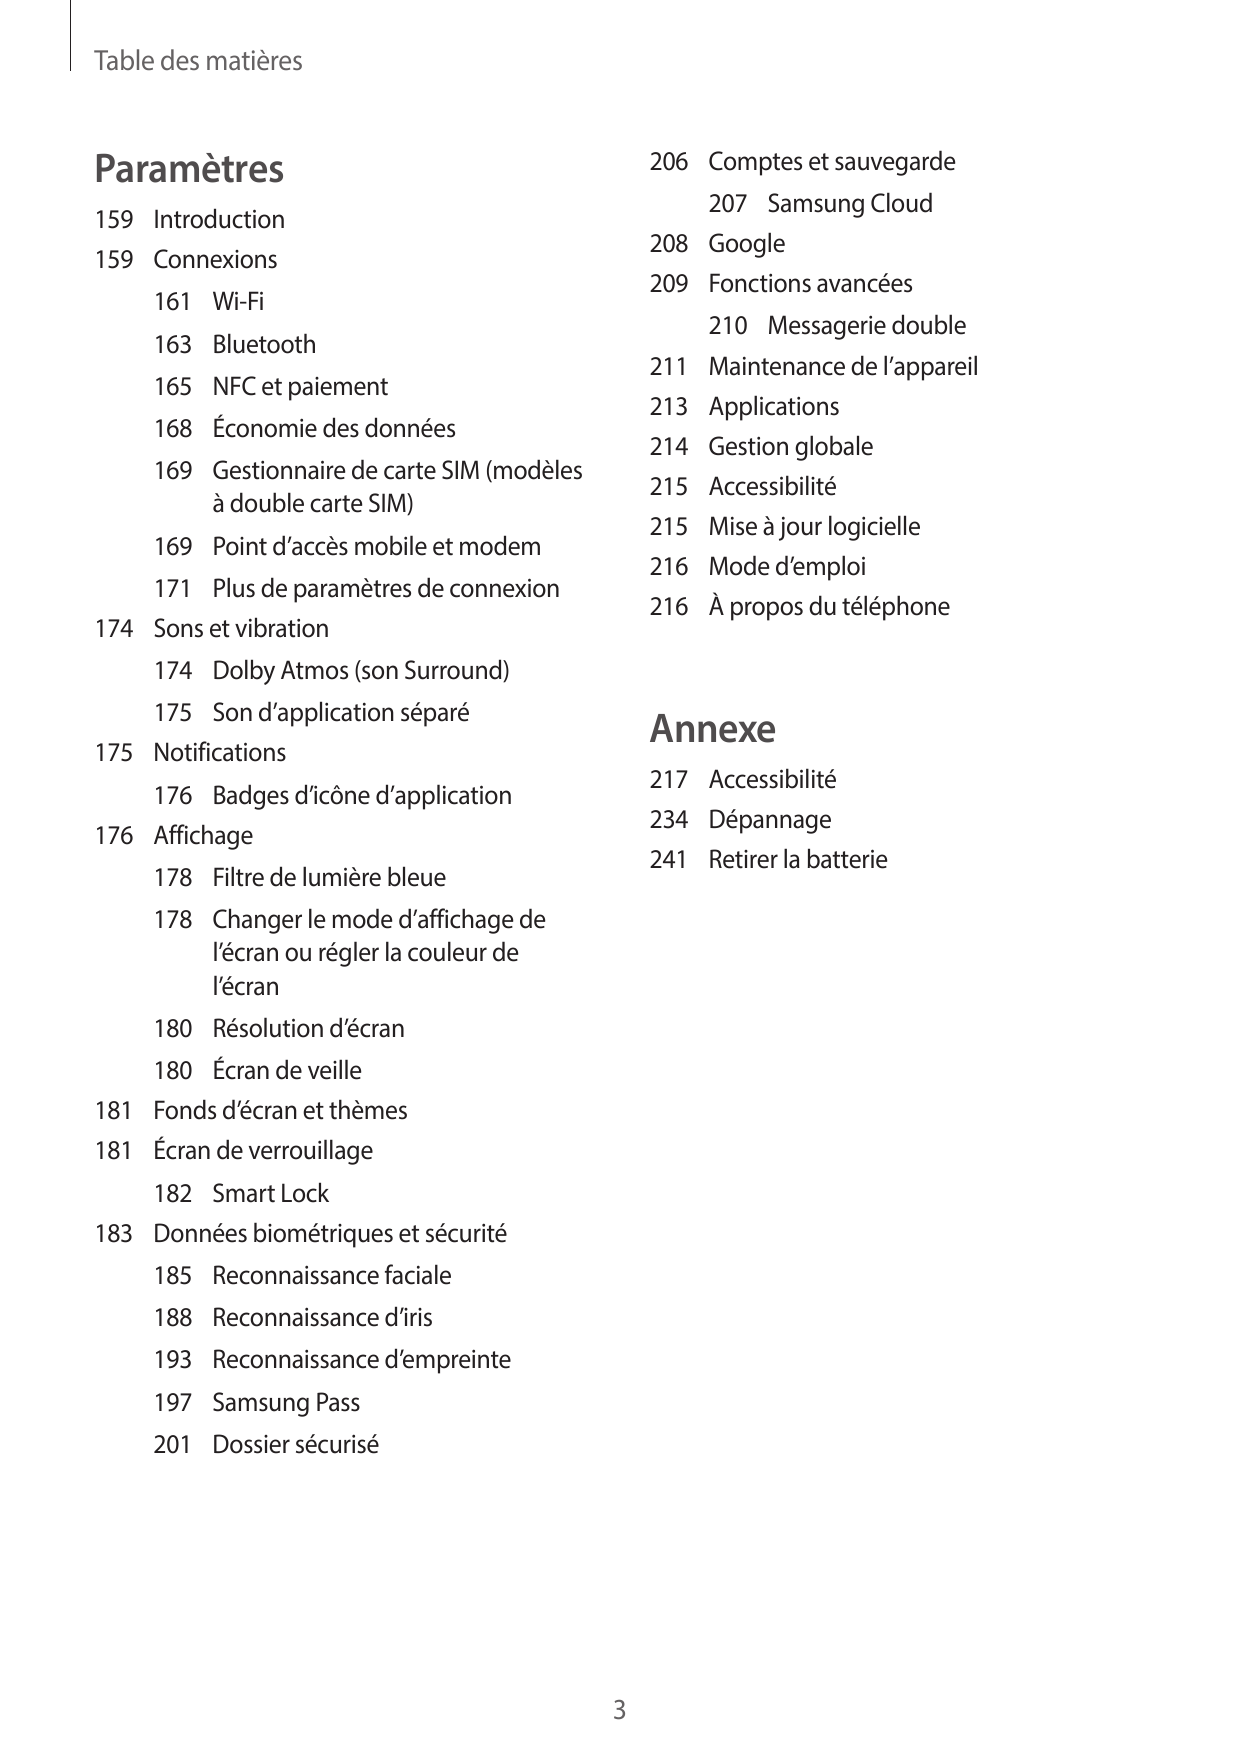 Table des matièresParamètres206 Comptes et sauvegarde207 Samsung Cloud208Google209 Fonctions avancées159Introduction159Connexion